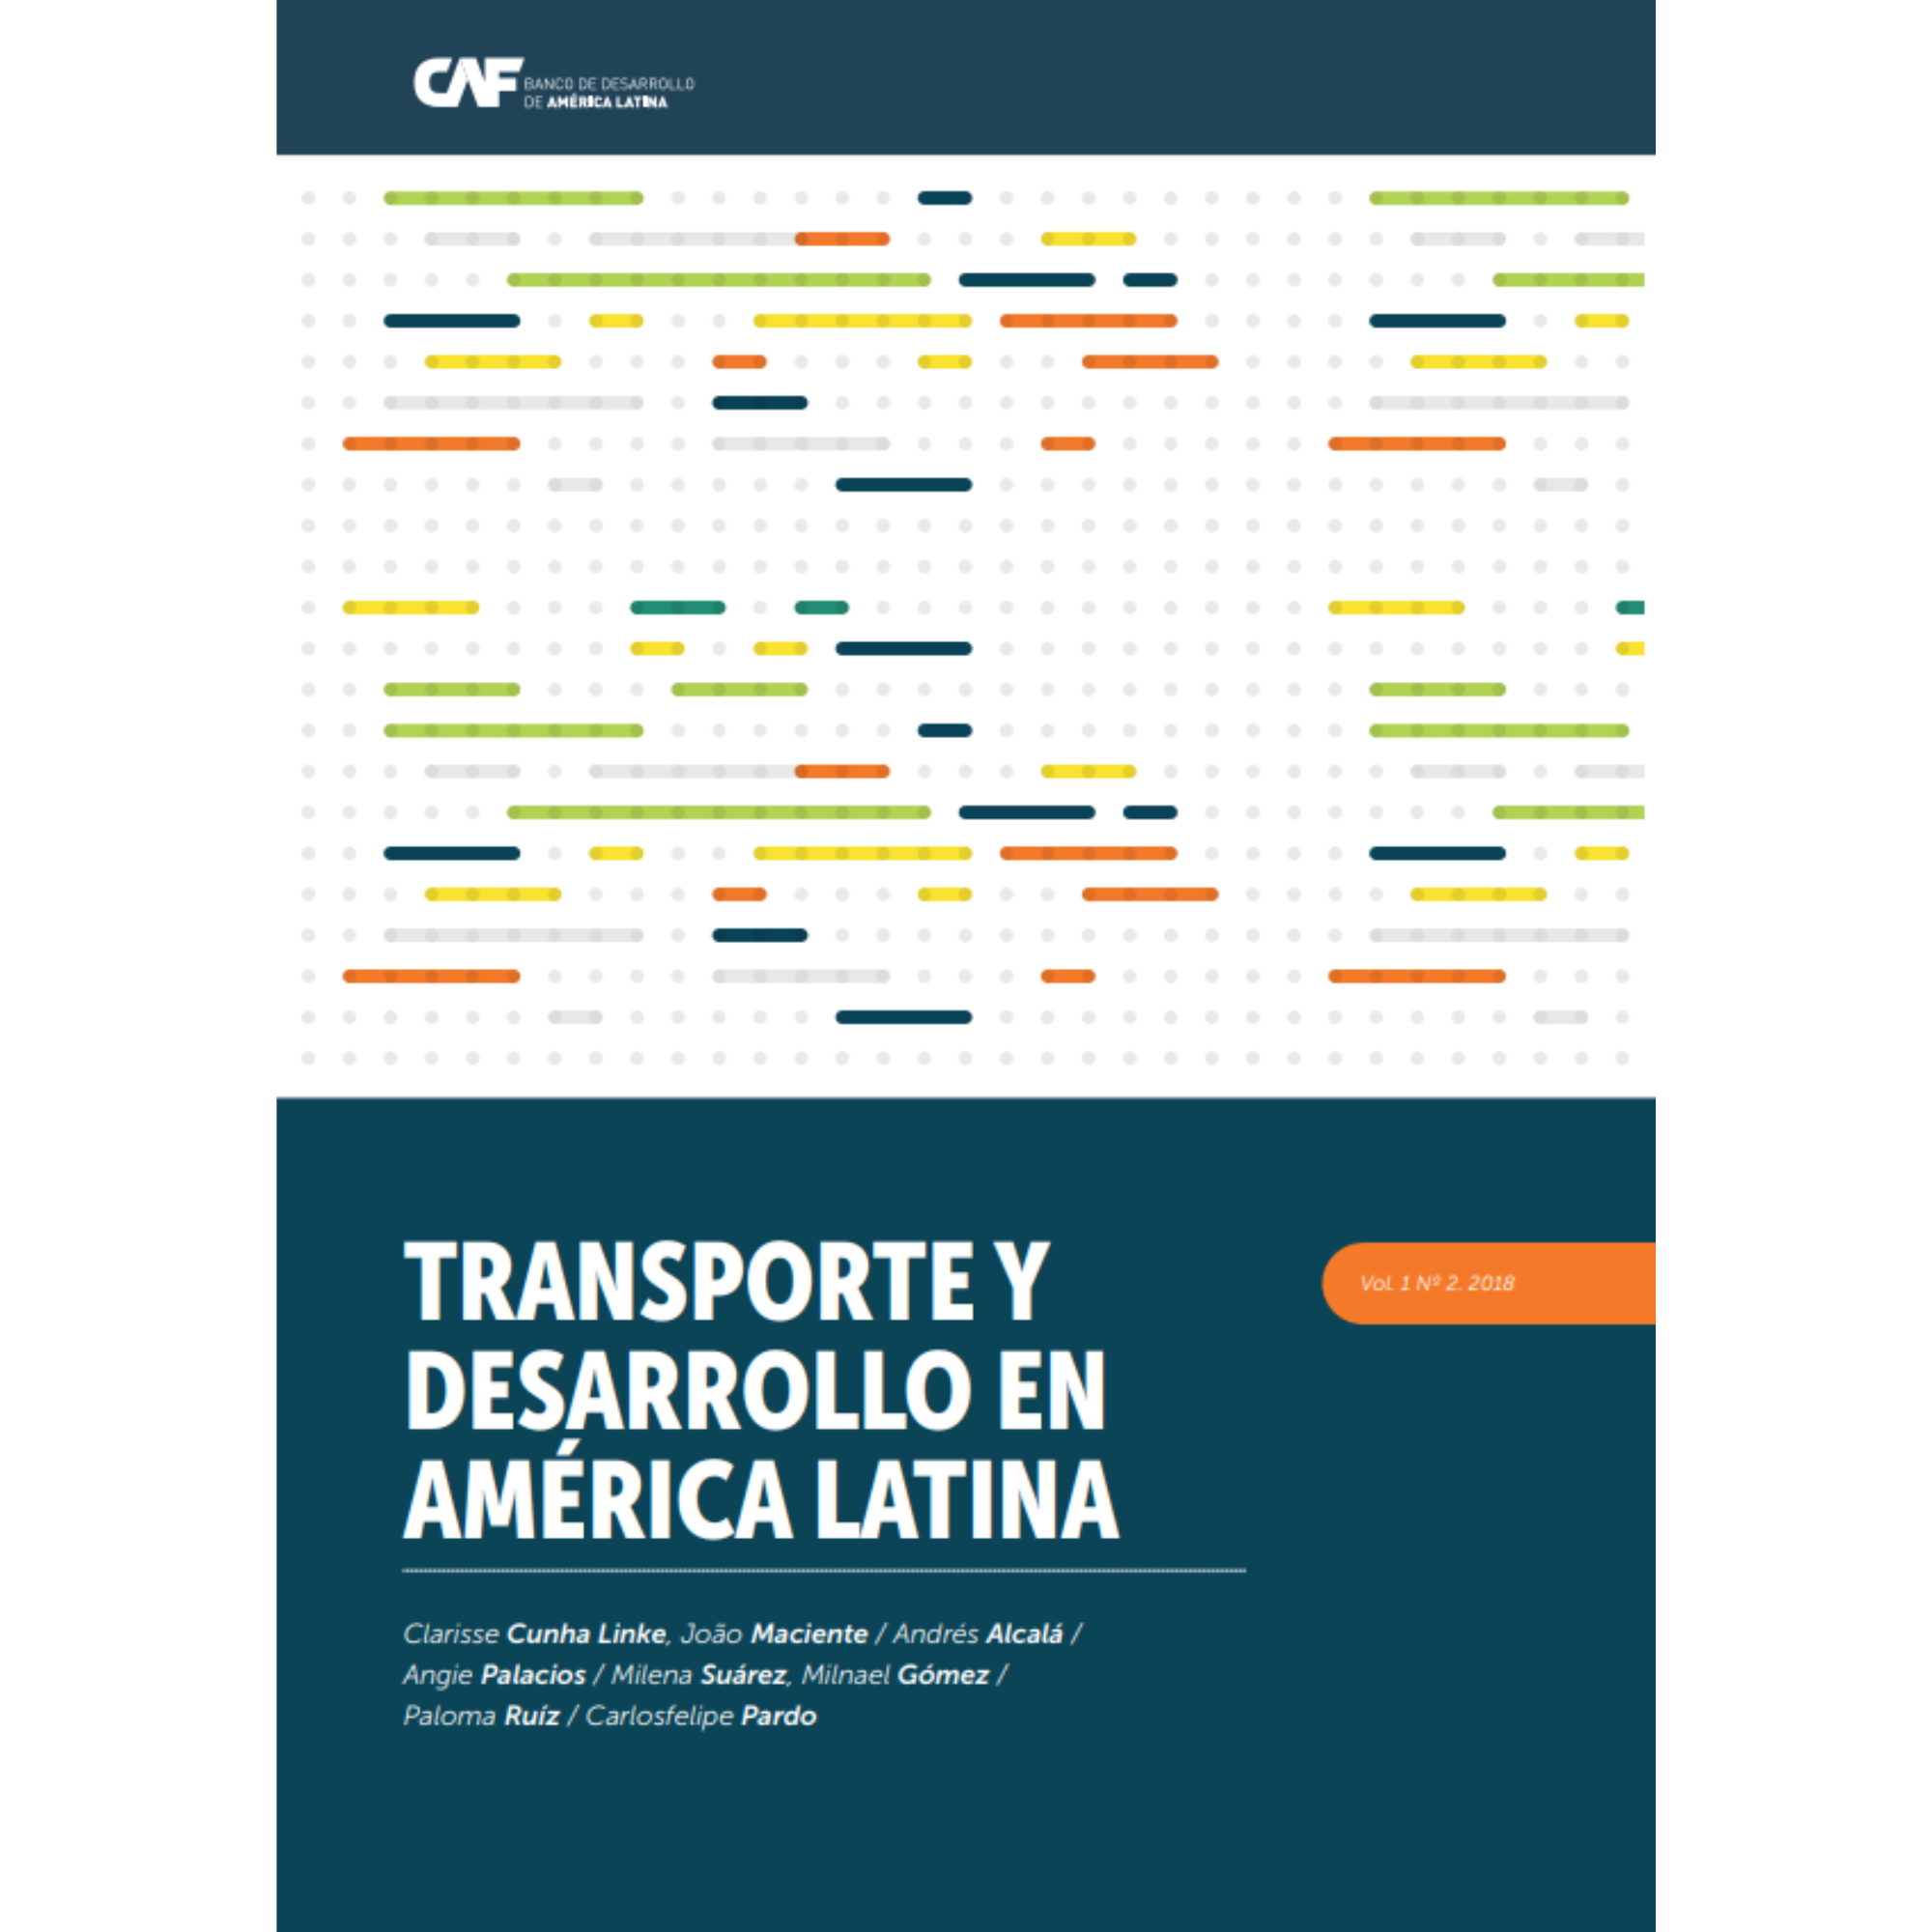 Mobilidade urbana no Brasil: medidas de adaptação à mudança no clima